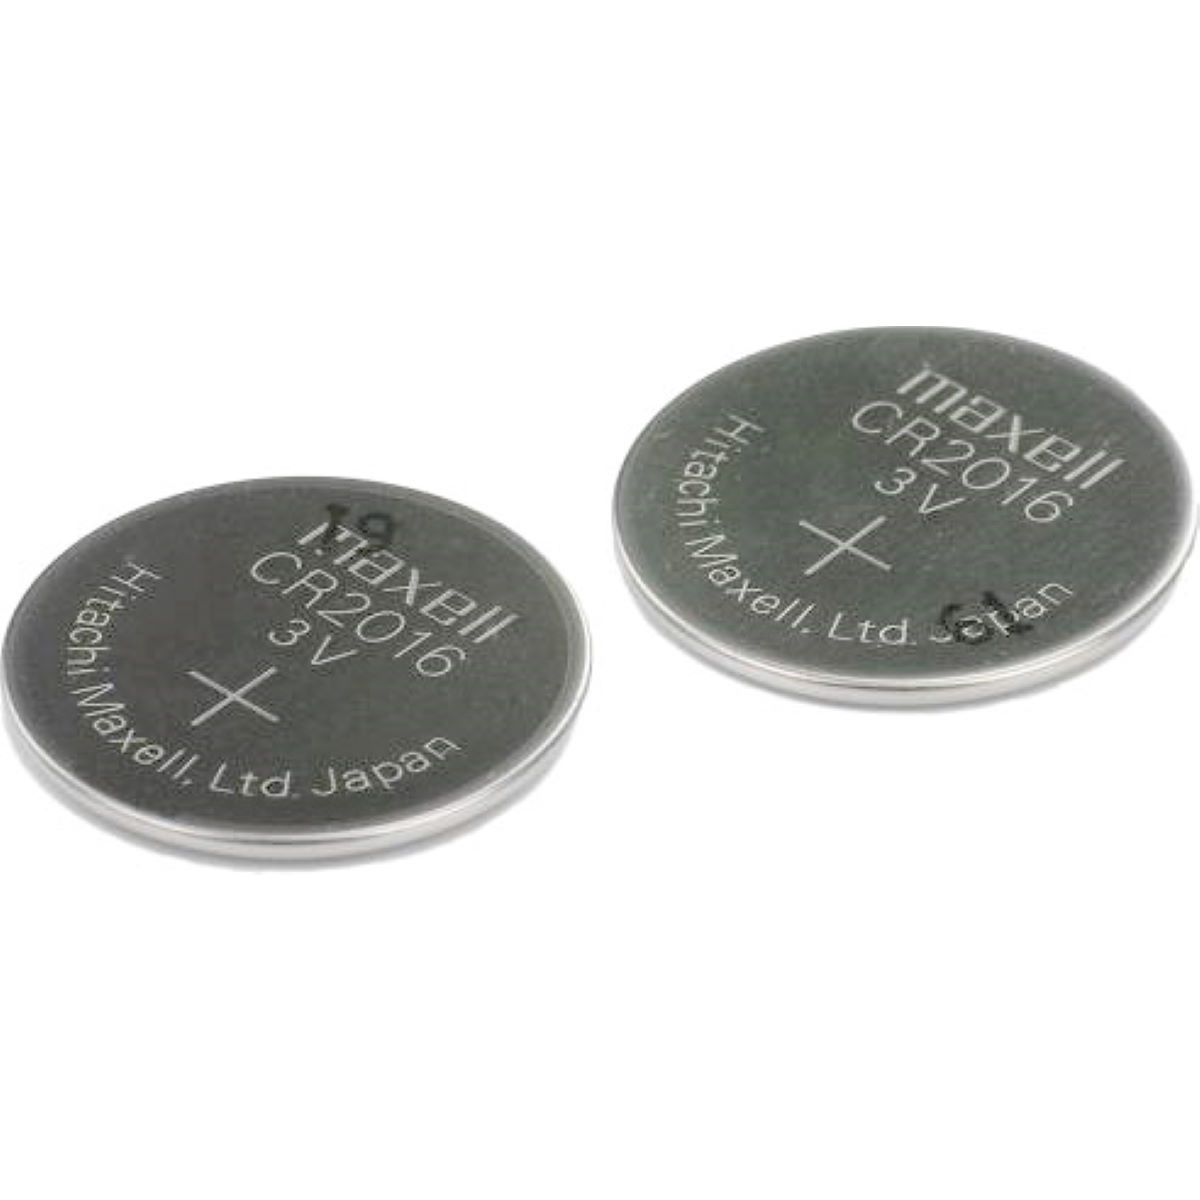 Bosch Purion Button Cell Battery - Accesorios para ciclocomputadores